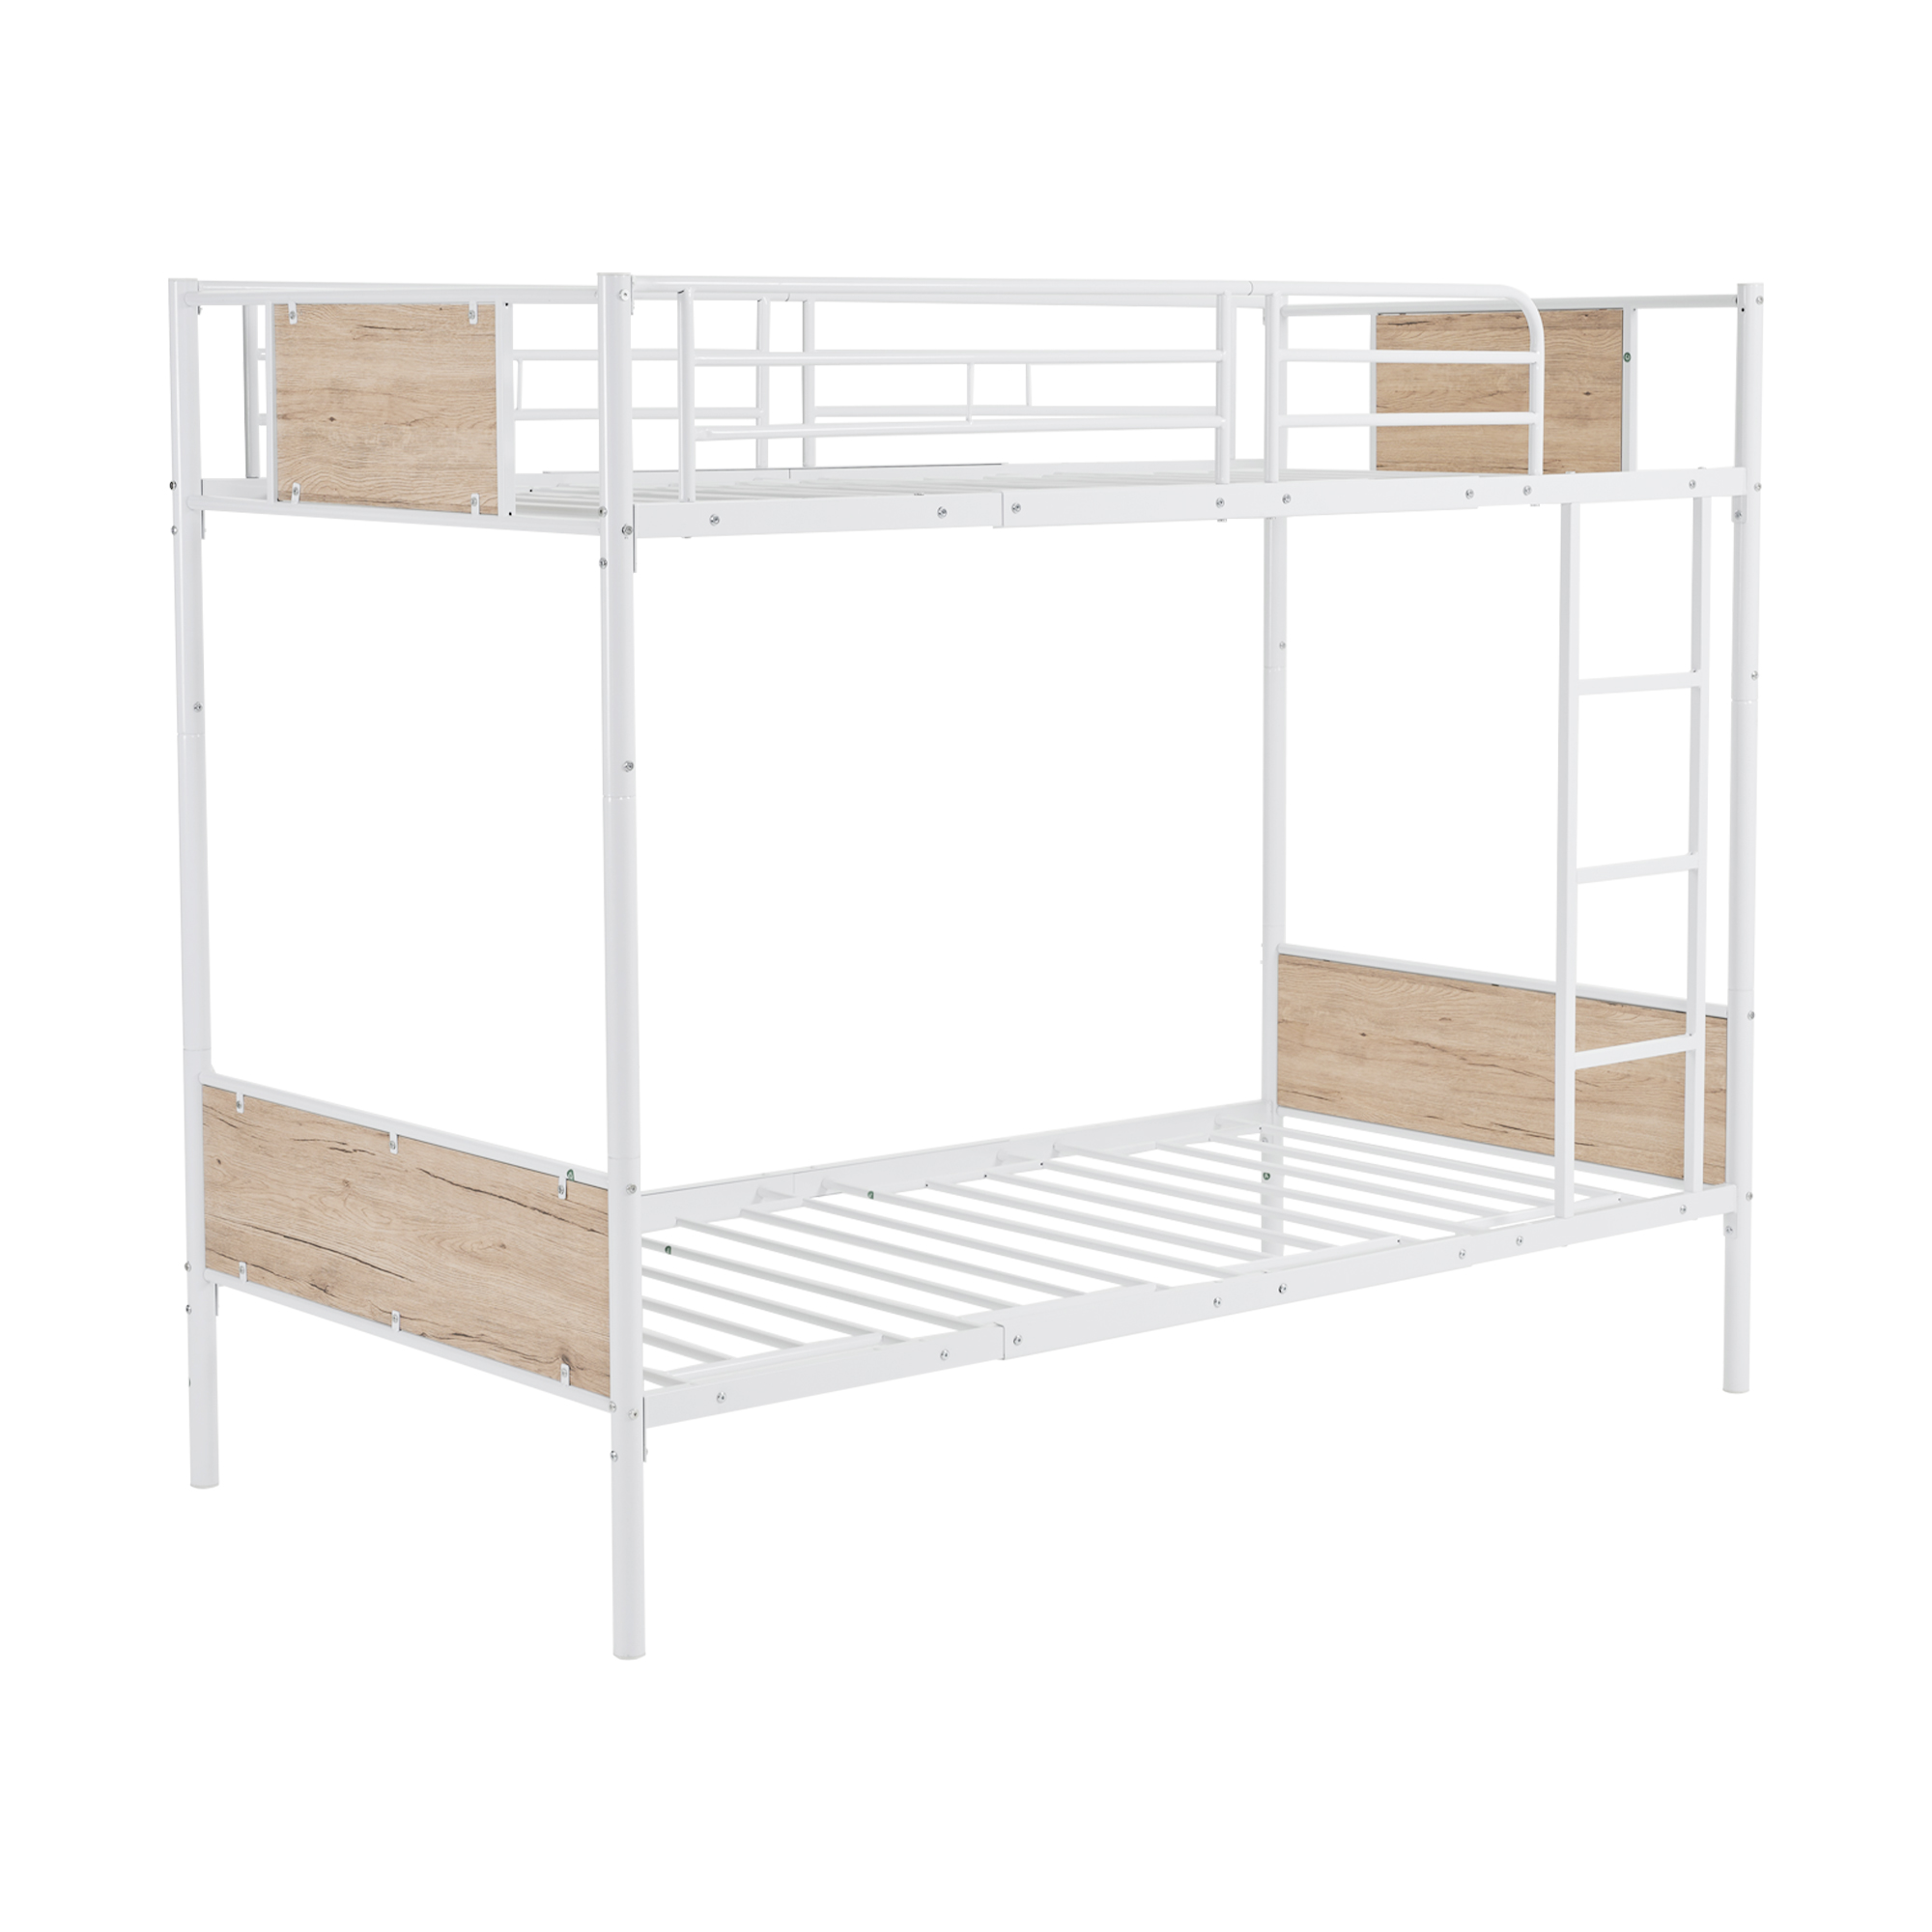 二段ベッド 子供 おしゃれ シングル パイプベッド シングルベッド 高さ調整可能 木 収納 北欧風 子供部屋 送料無料 スチール 耐震 ベッド SDG  一年保証